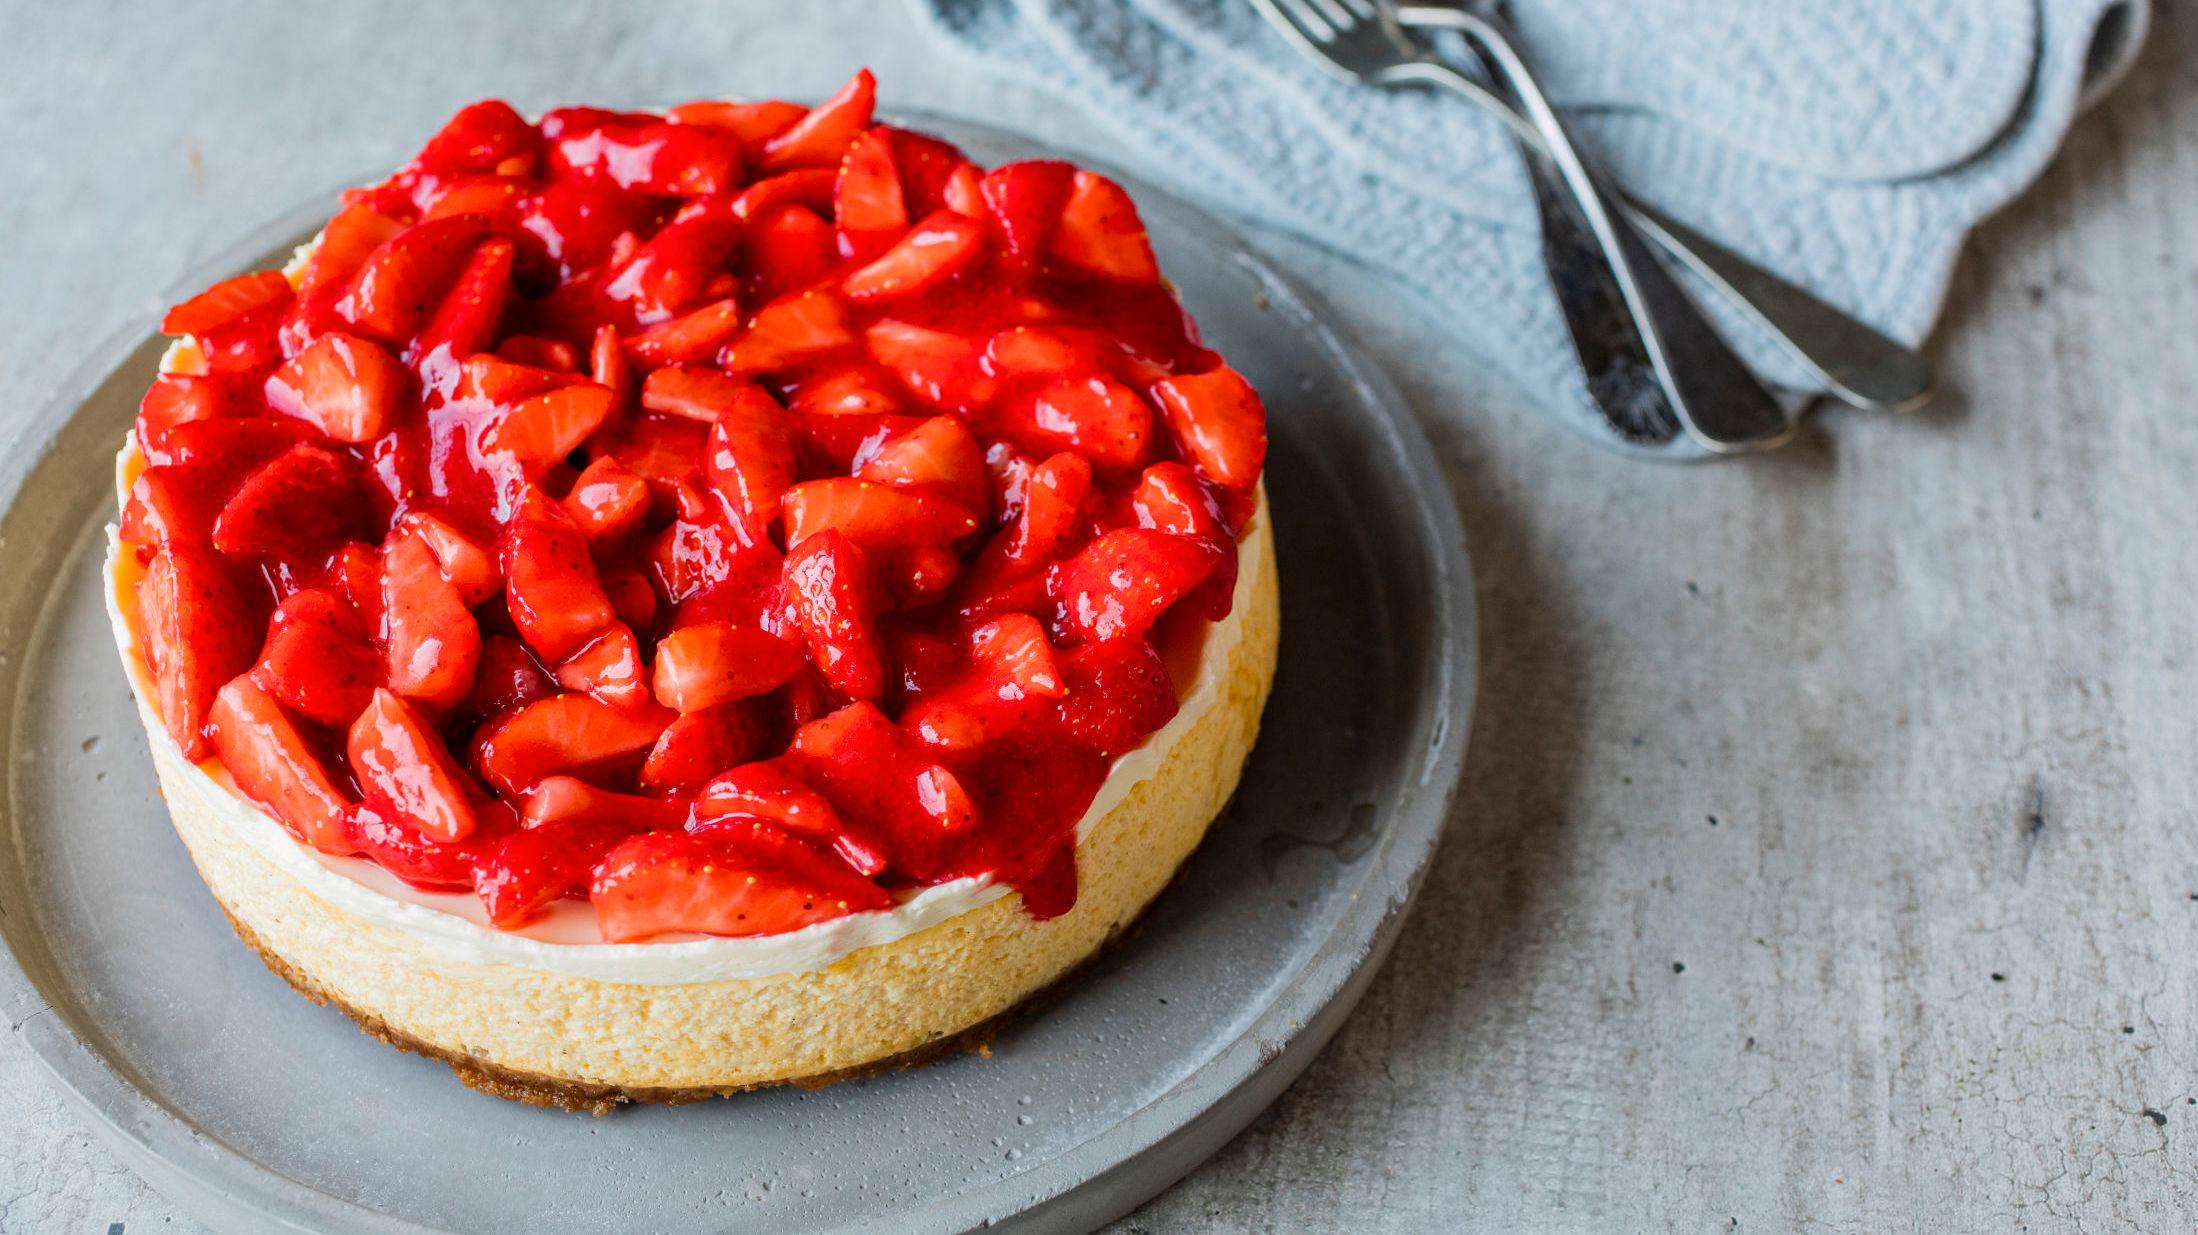 KAKEDAGEN: Denne ostekaken med jordbær er bare én av flere kaker du kan bake på "Den internasjonale kakedagen". Foto: Sara Johannessen/VG